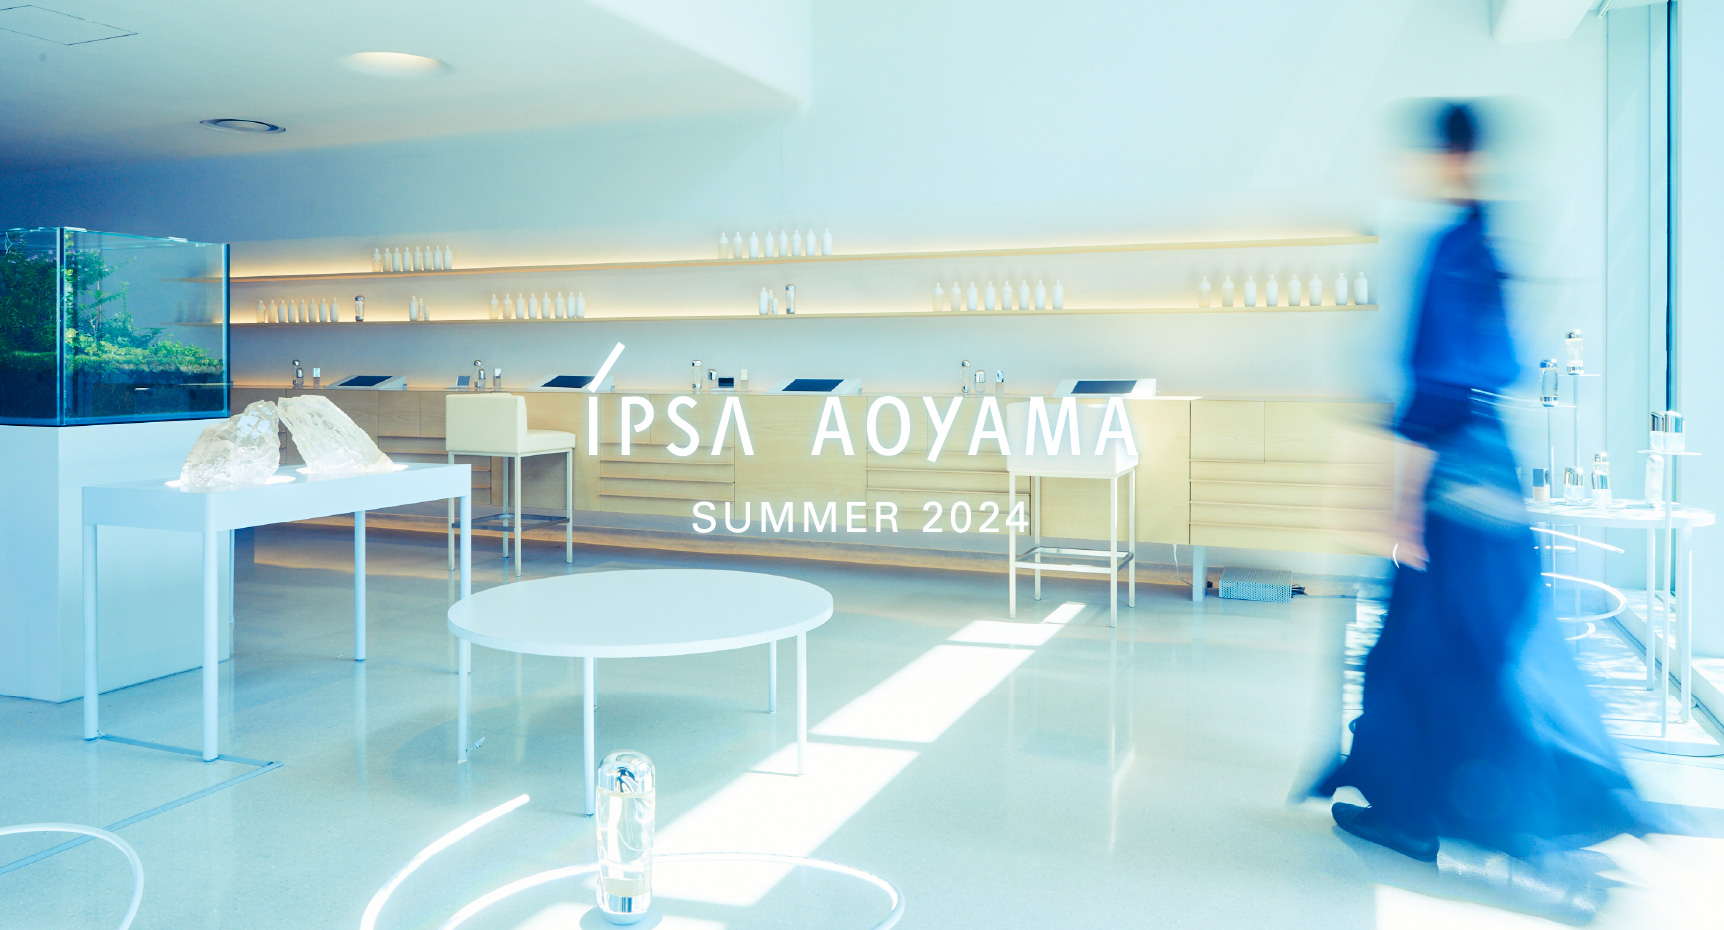 IPSA Aoyama Spring 2022